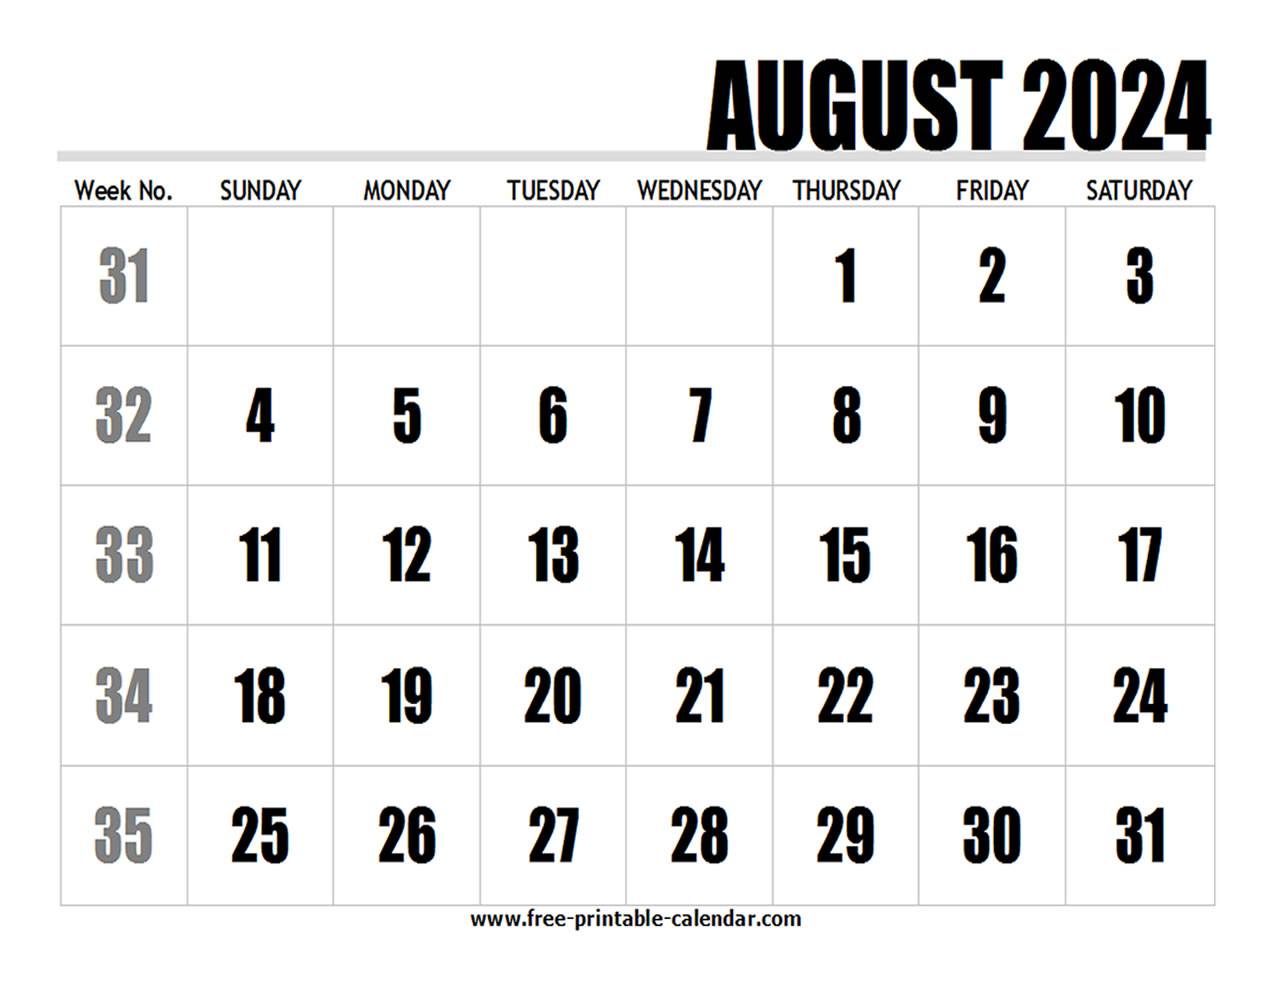 2024 Calendar August